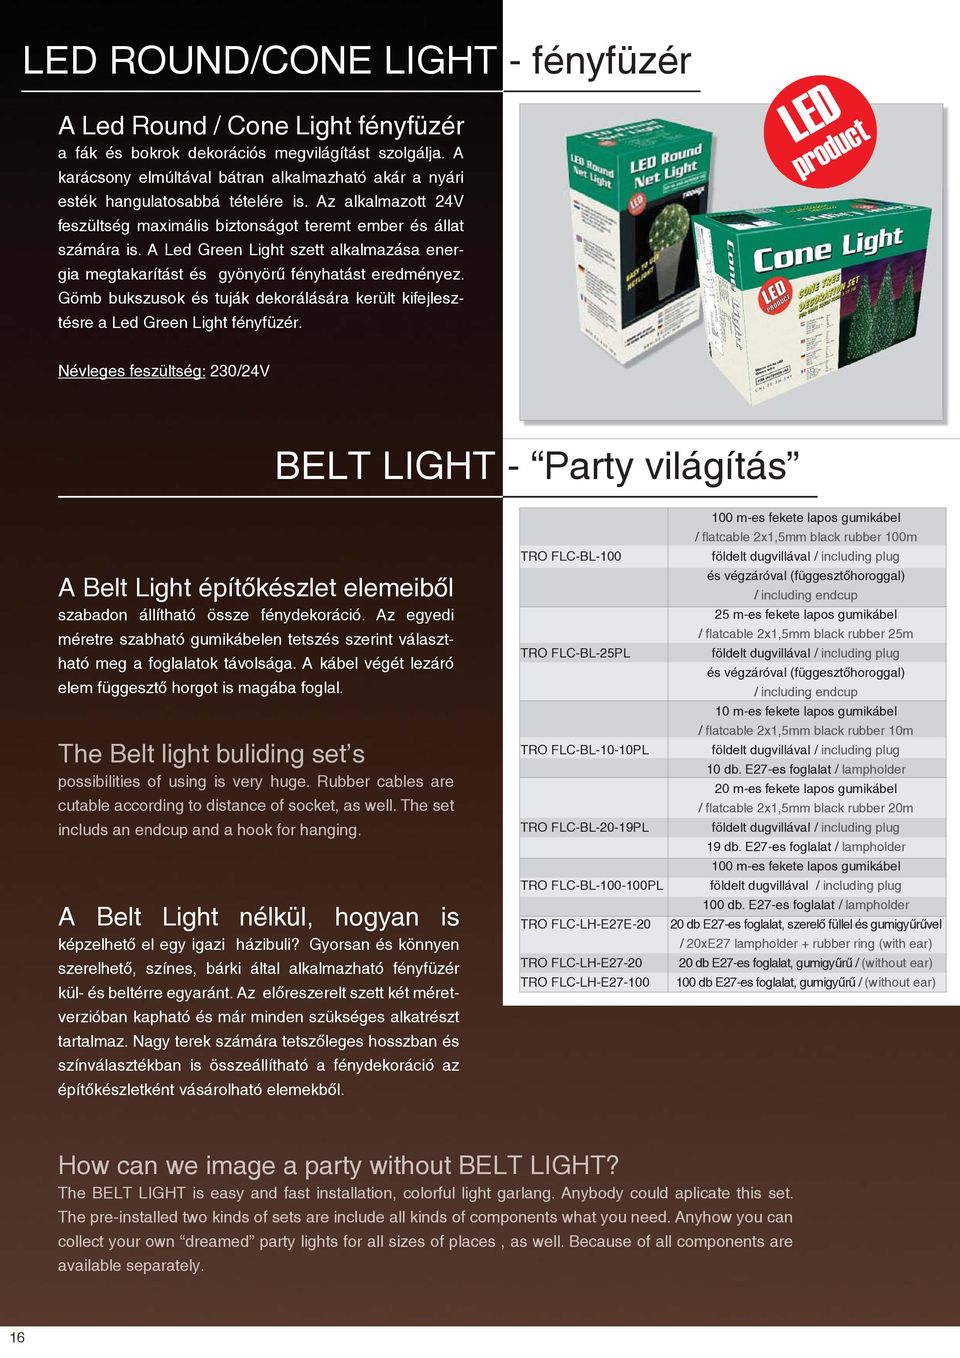 A Led Green Light szett alkalmazása energia megtakarítást és gyönyörű fényhatást eredményez. Gömb bukszusok és tuják dekorálására került kifejlesztésre a Led Green Light fényfüzér.